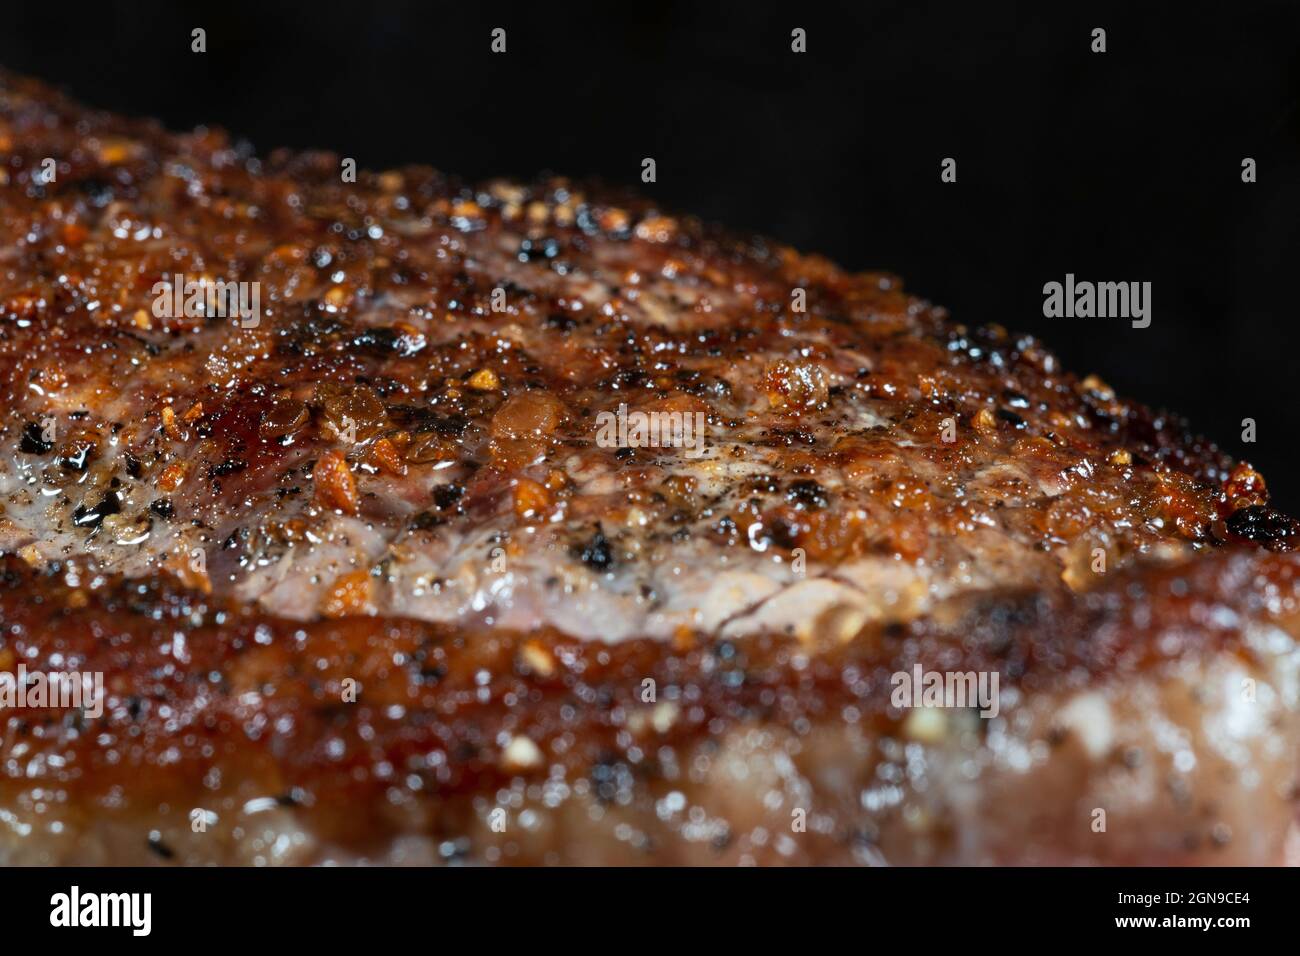 a steak, contrafile Stock Photo